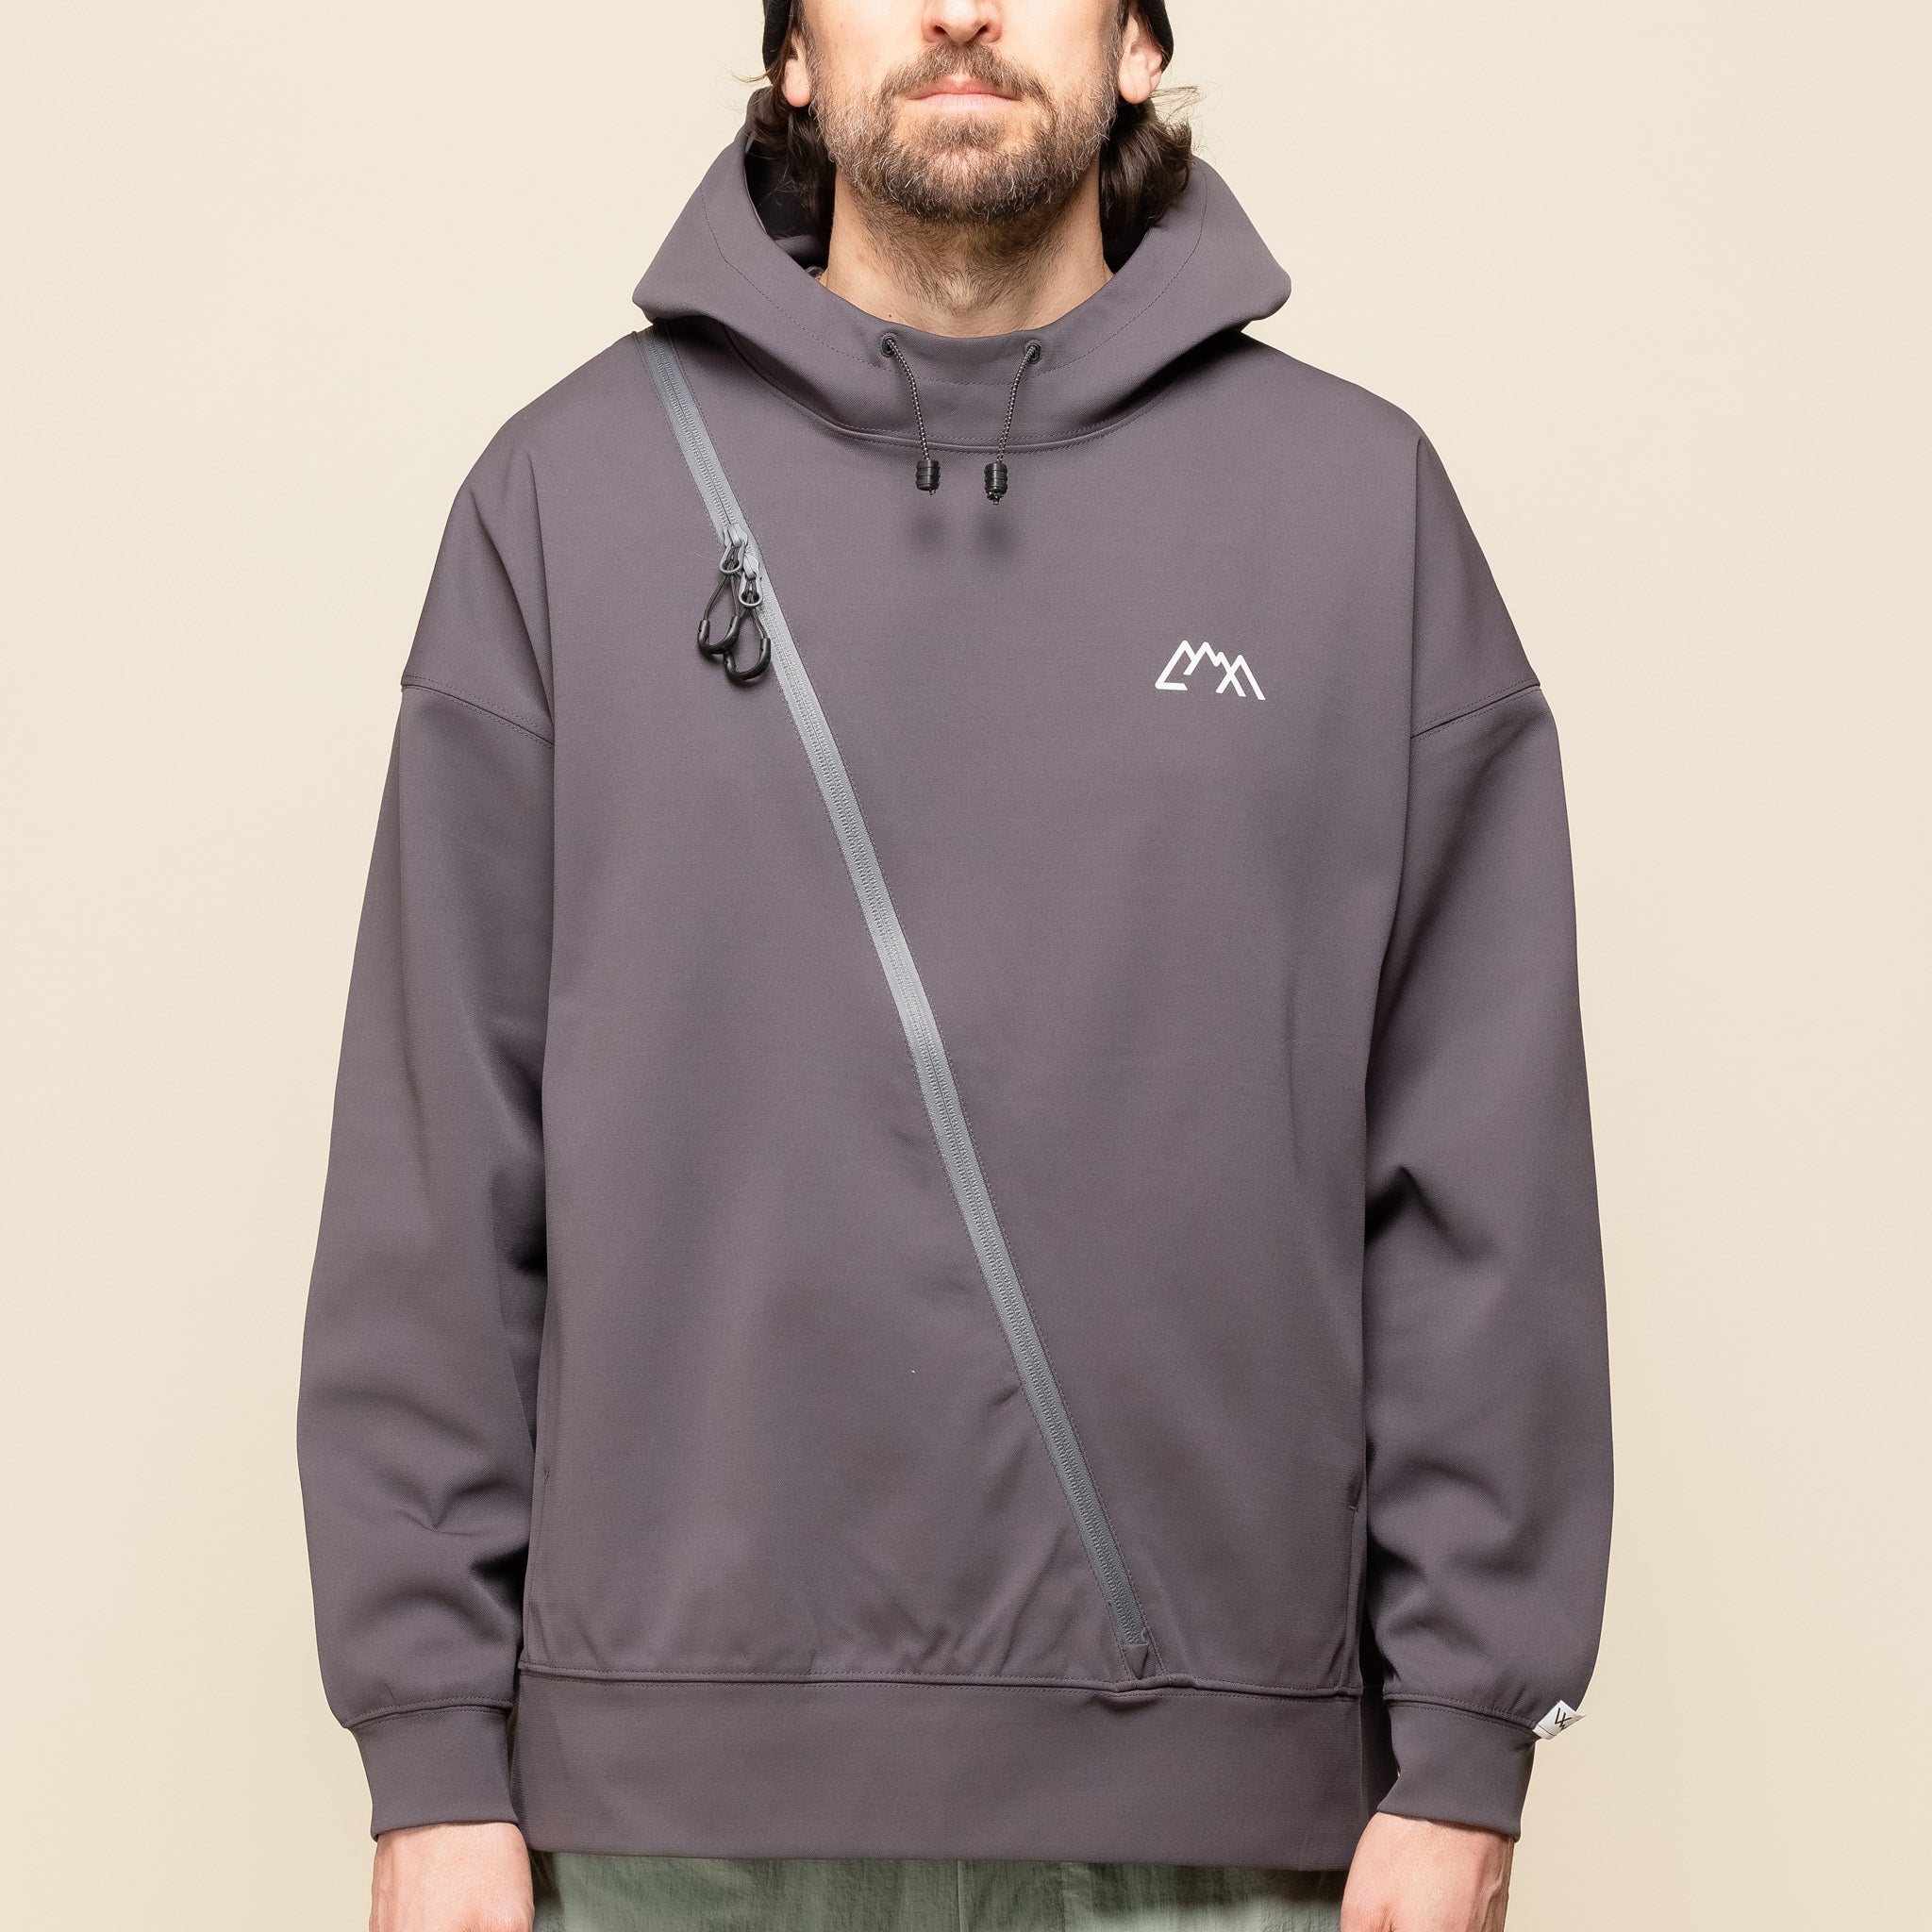 CMF Comfy Outdoor Garment - Diver Hoodie Sweatshirt - Dark Grey